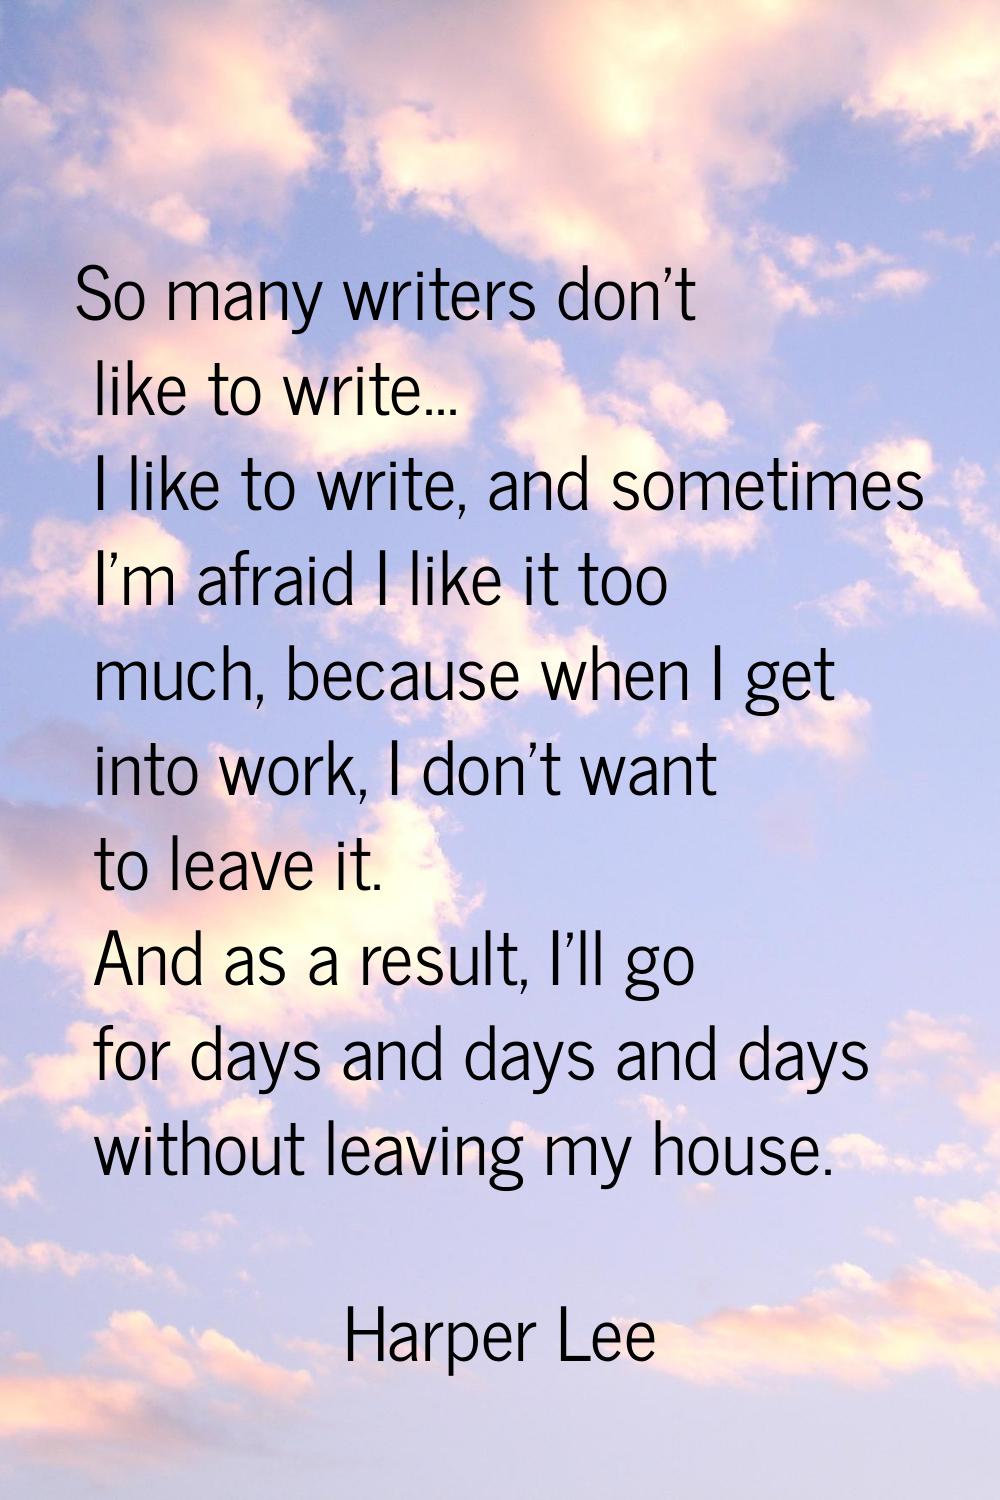 So many writers don't like to write... I like to write, and sometimes I'm afraid I like it too much